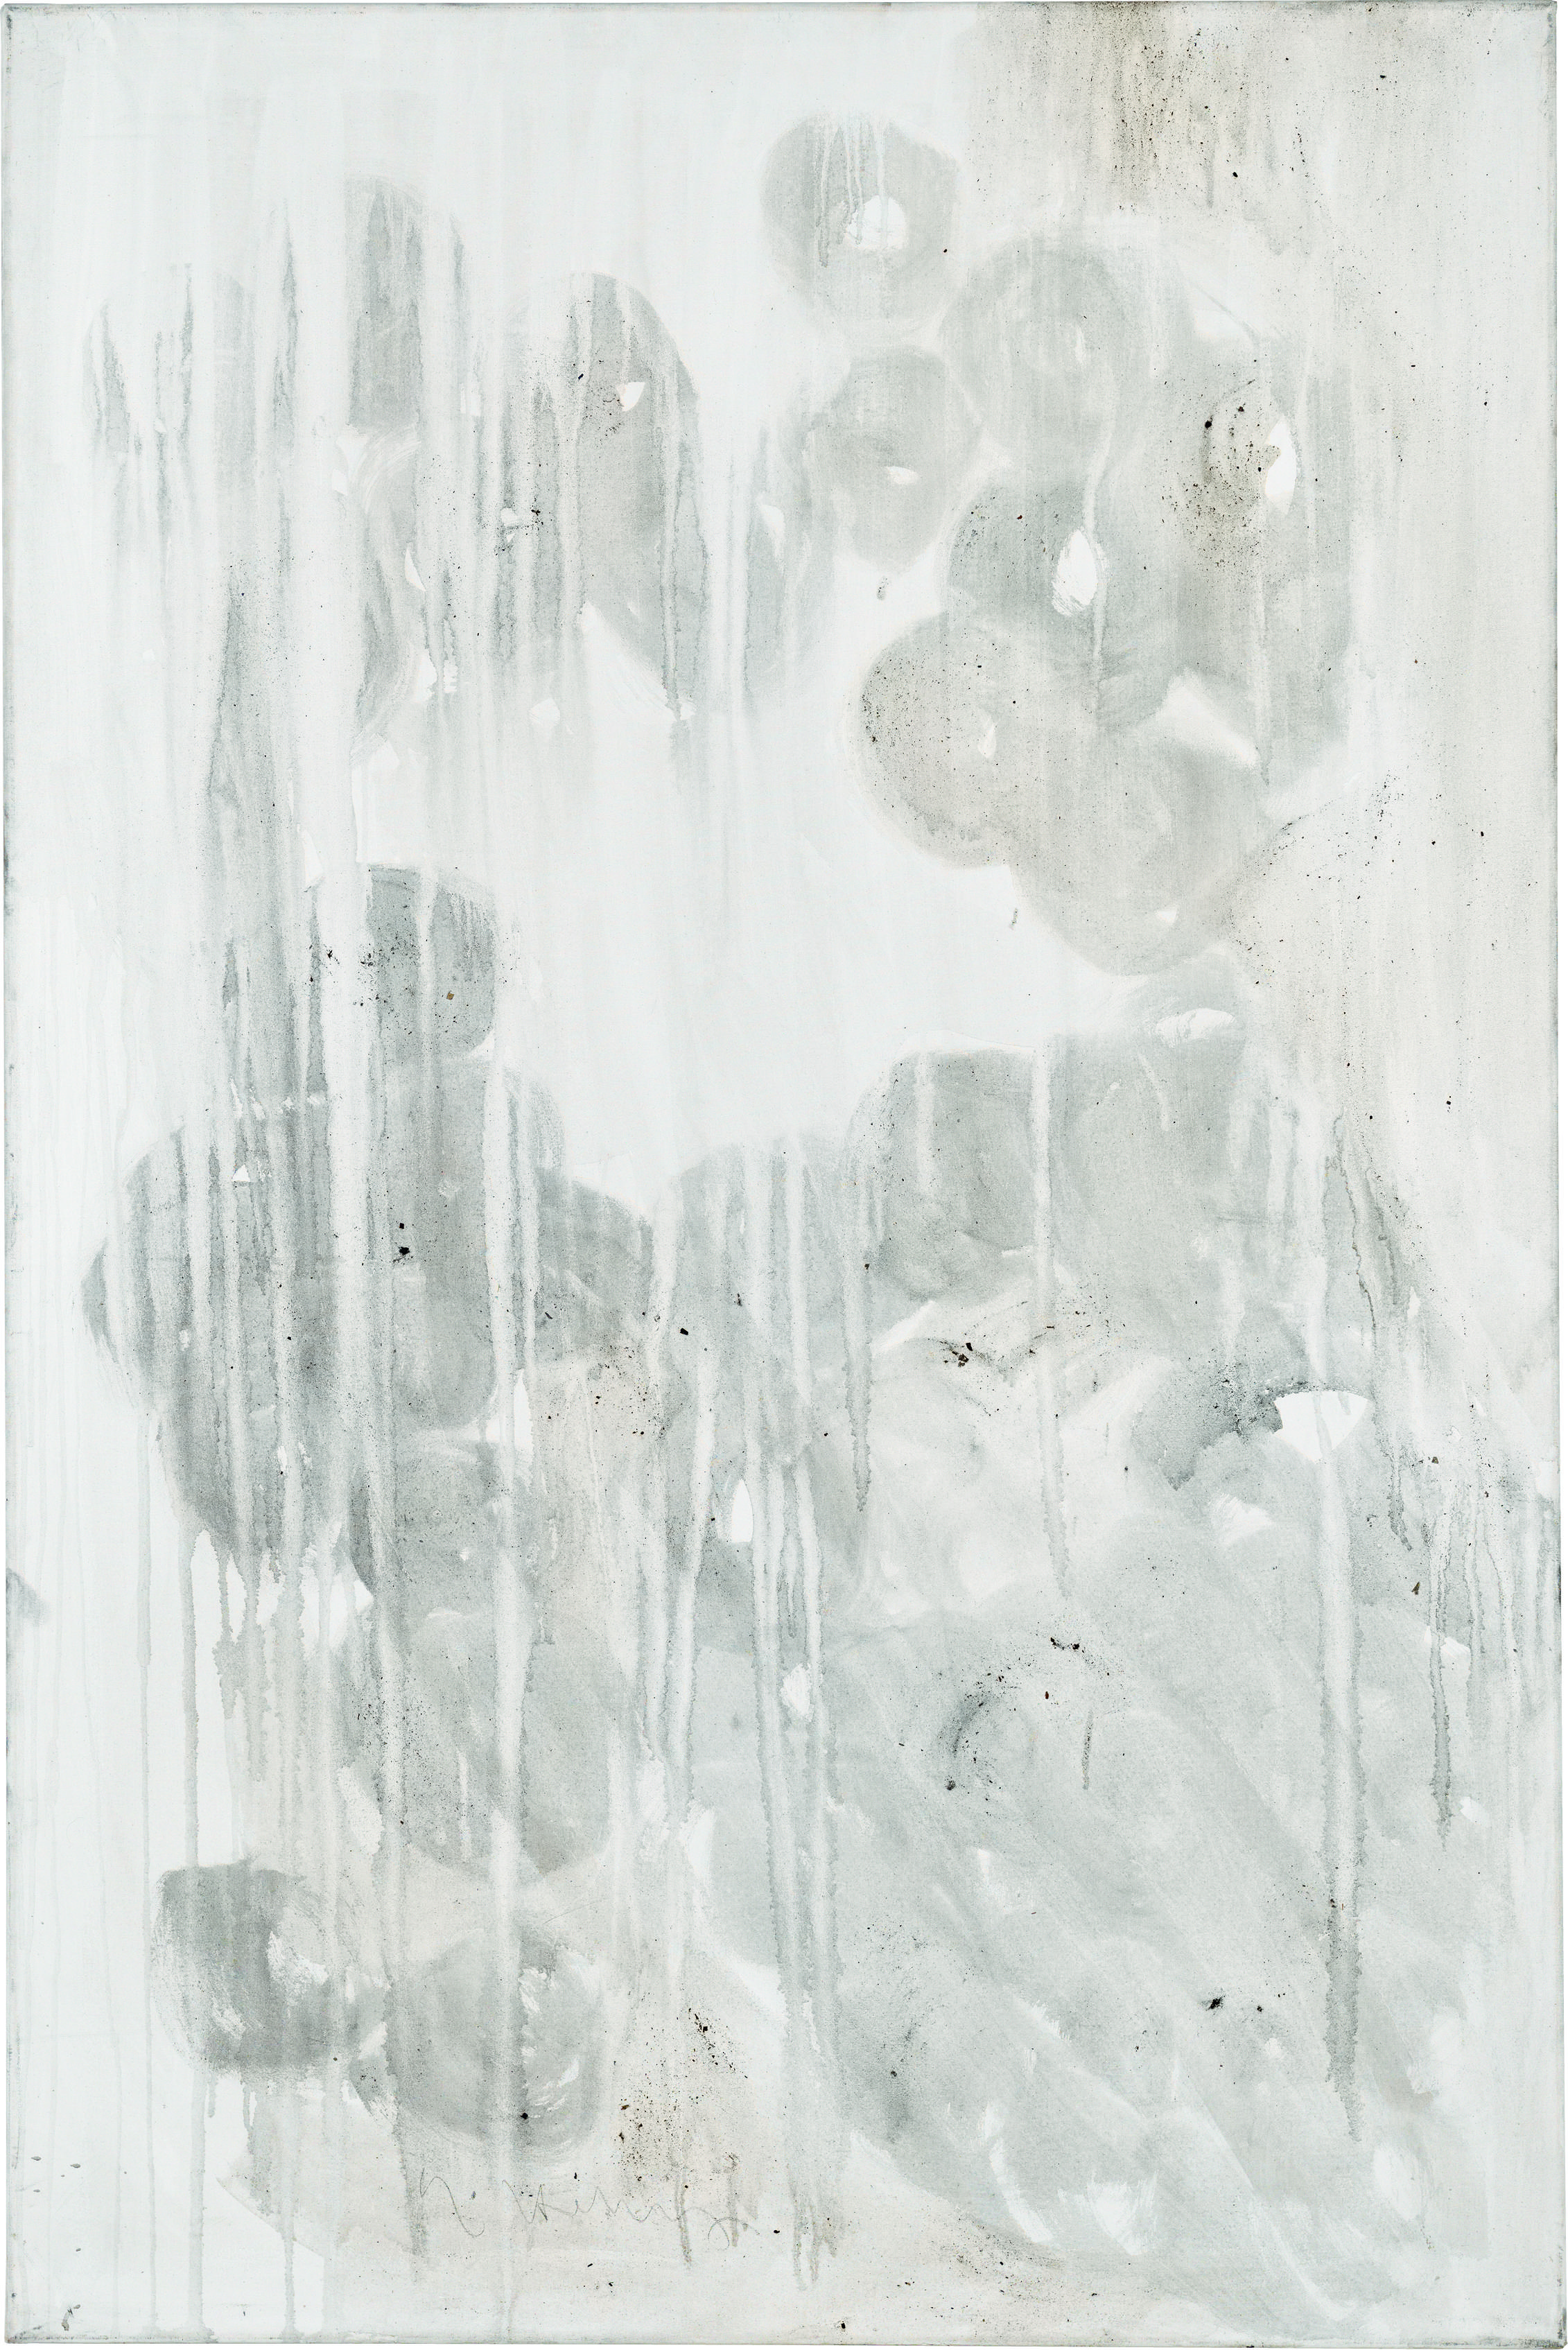 Ashes to Ashes 3  // Asche in Eitempera auf Leinwand // 150 x 100 cm // 2011